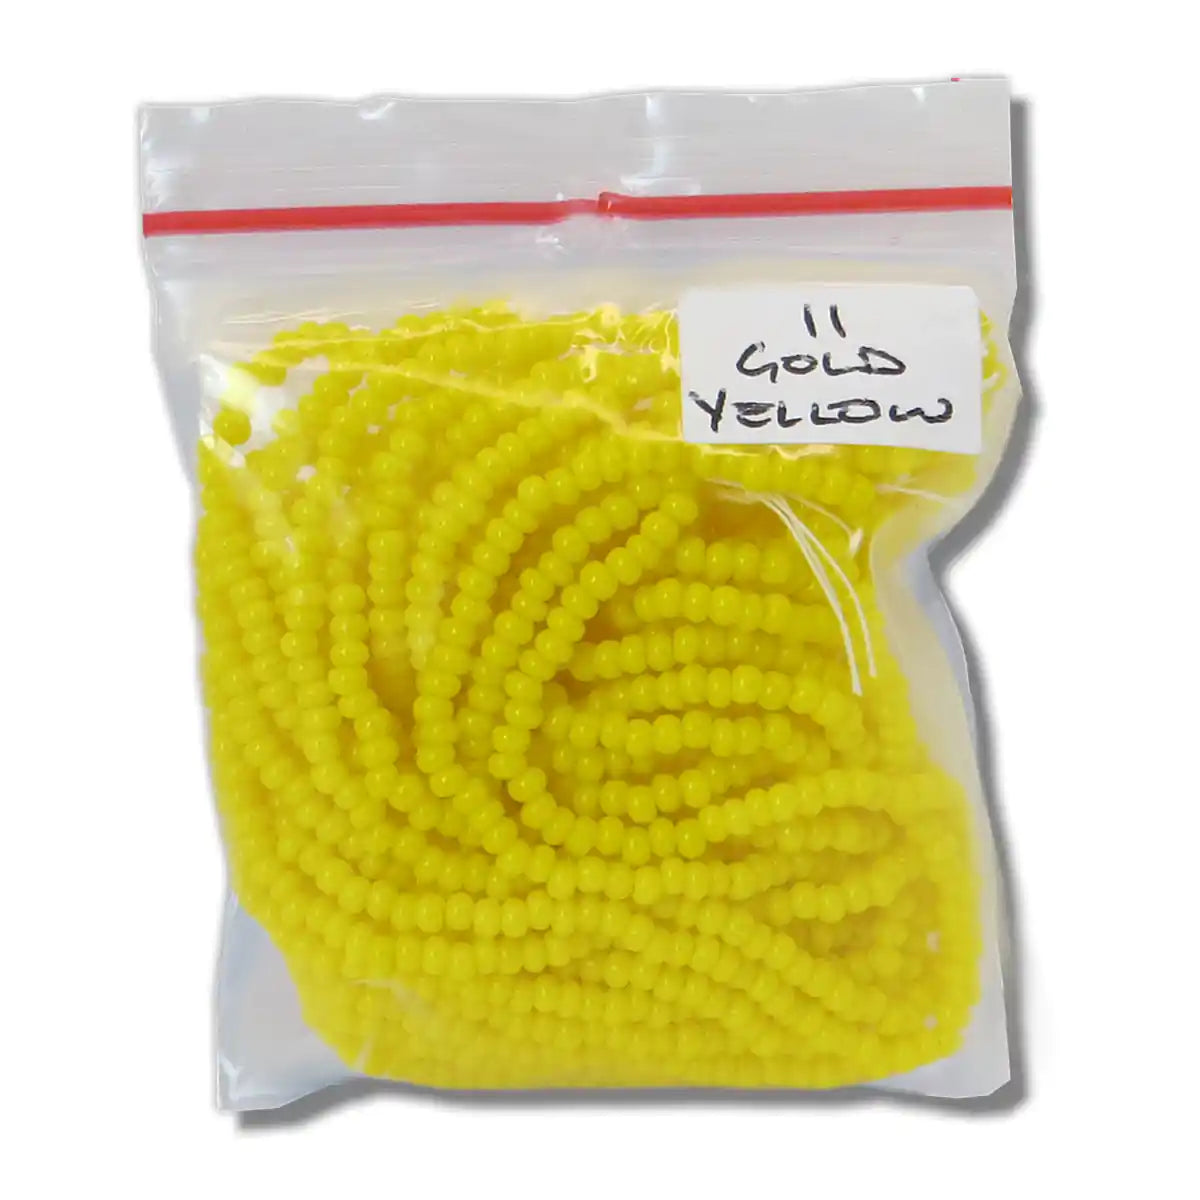 MIYUKI-Seed Beads-Gold Yellow-6 Strand-Size 11